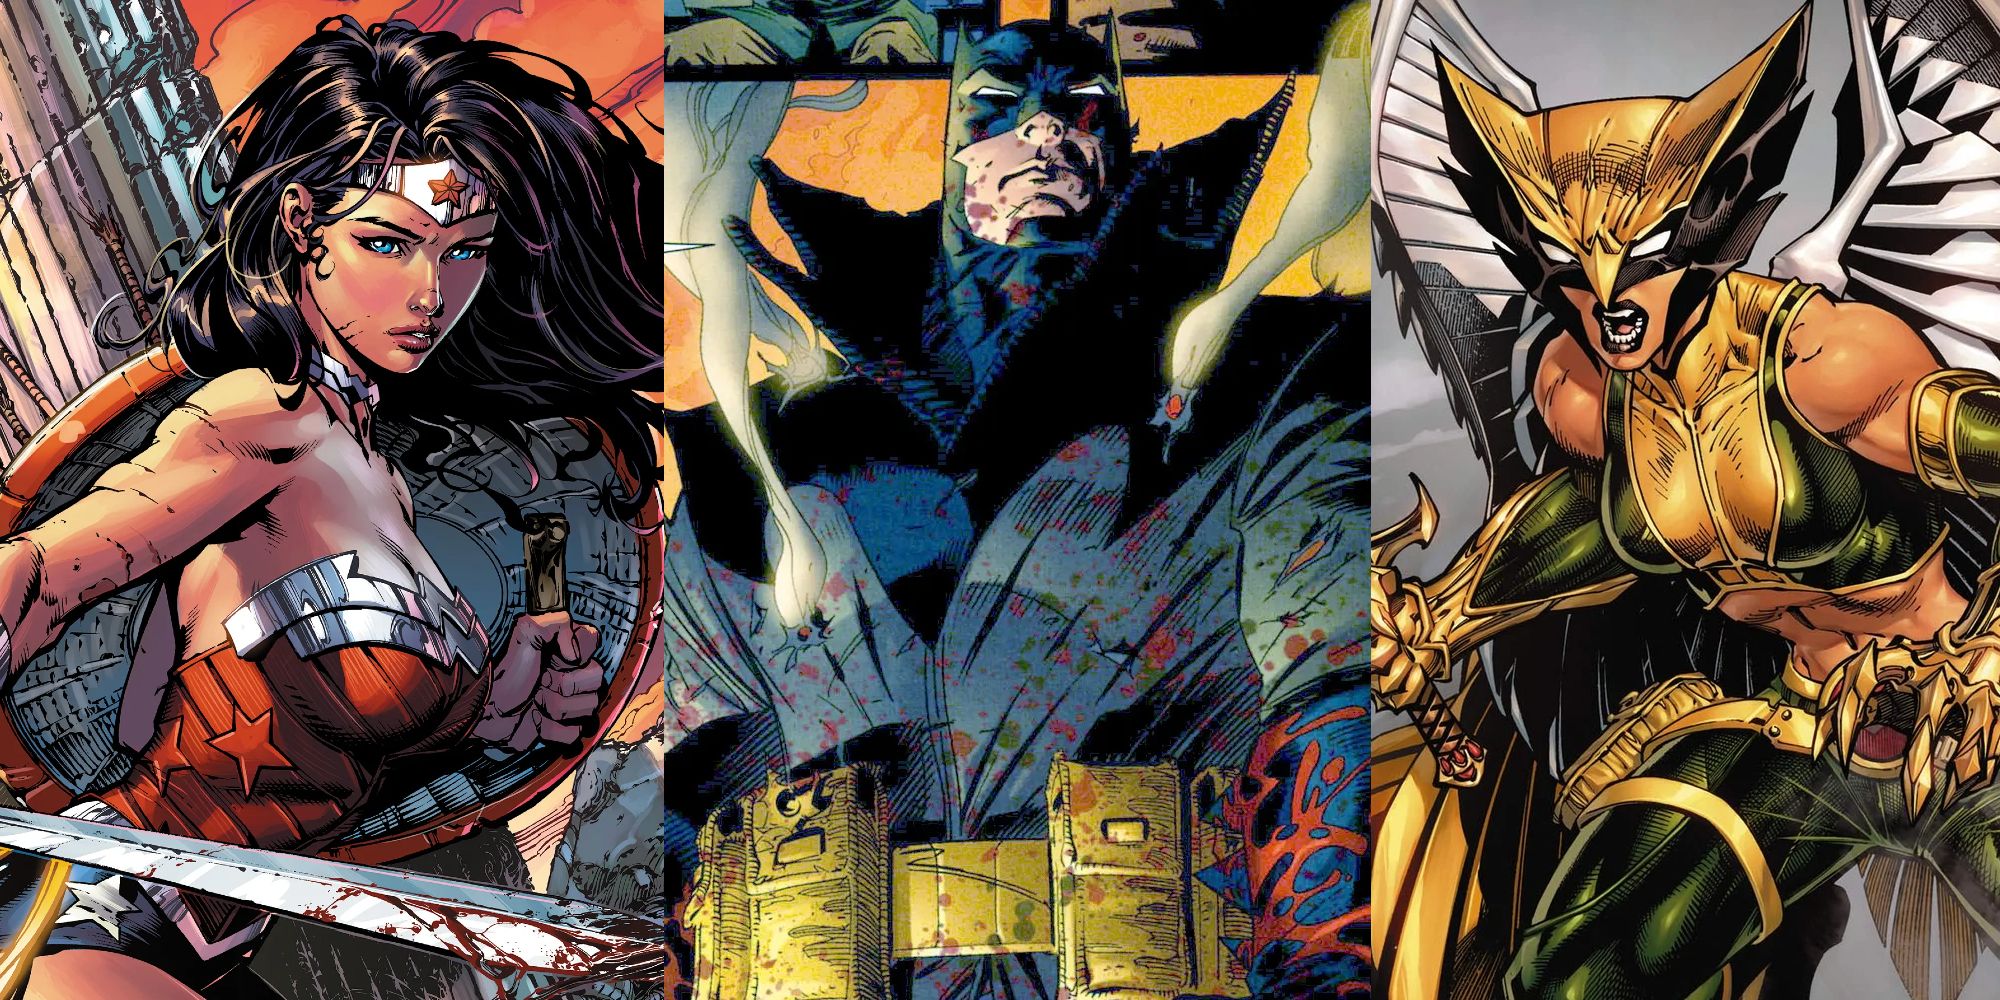 Wonder Woman in battle; Batman covered in blood; Hawkgirl in battle